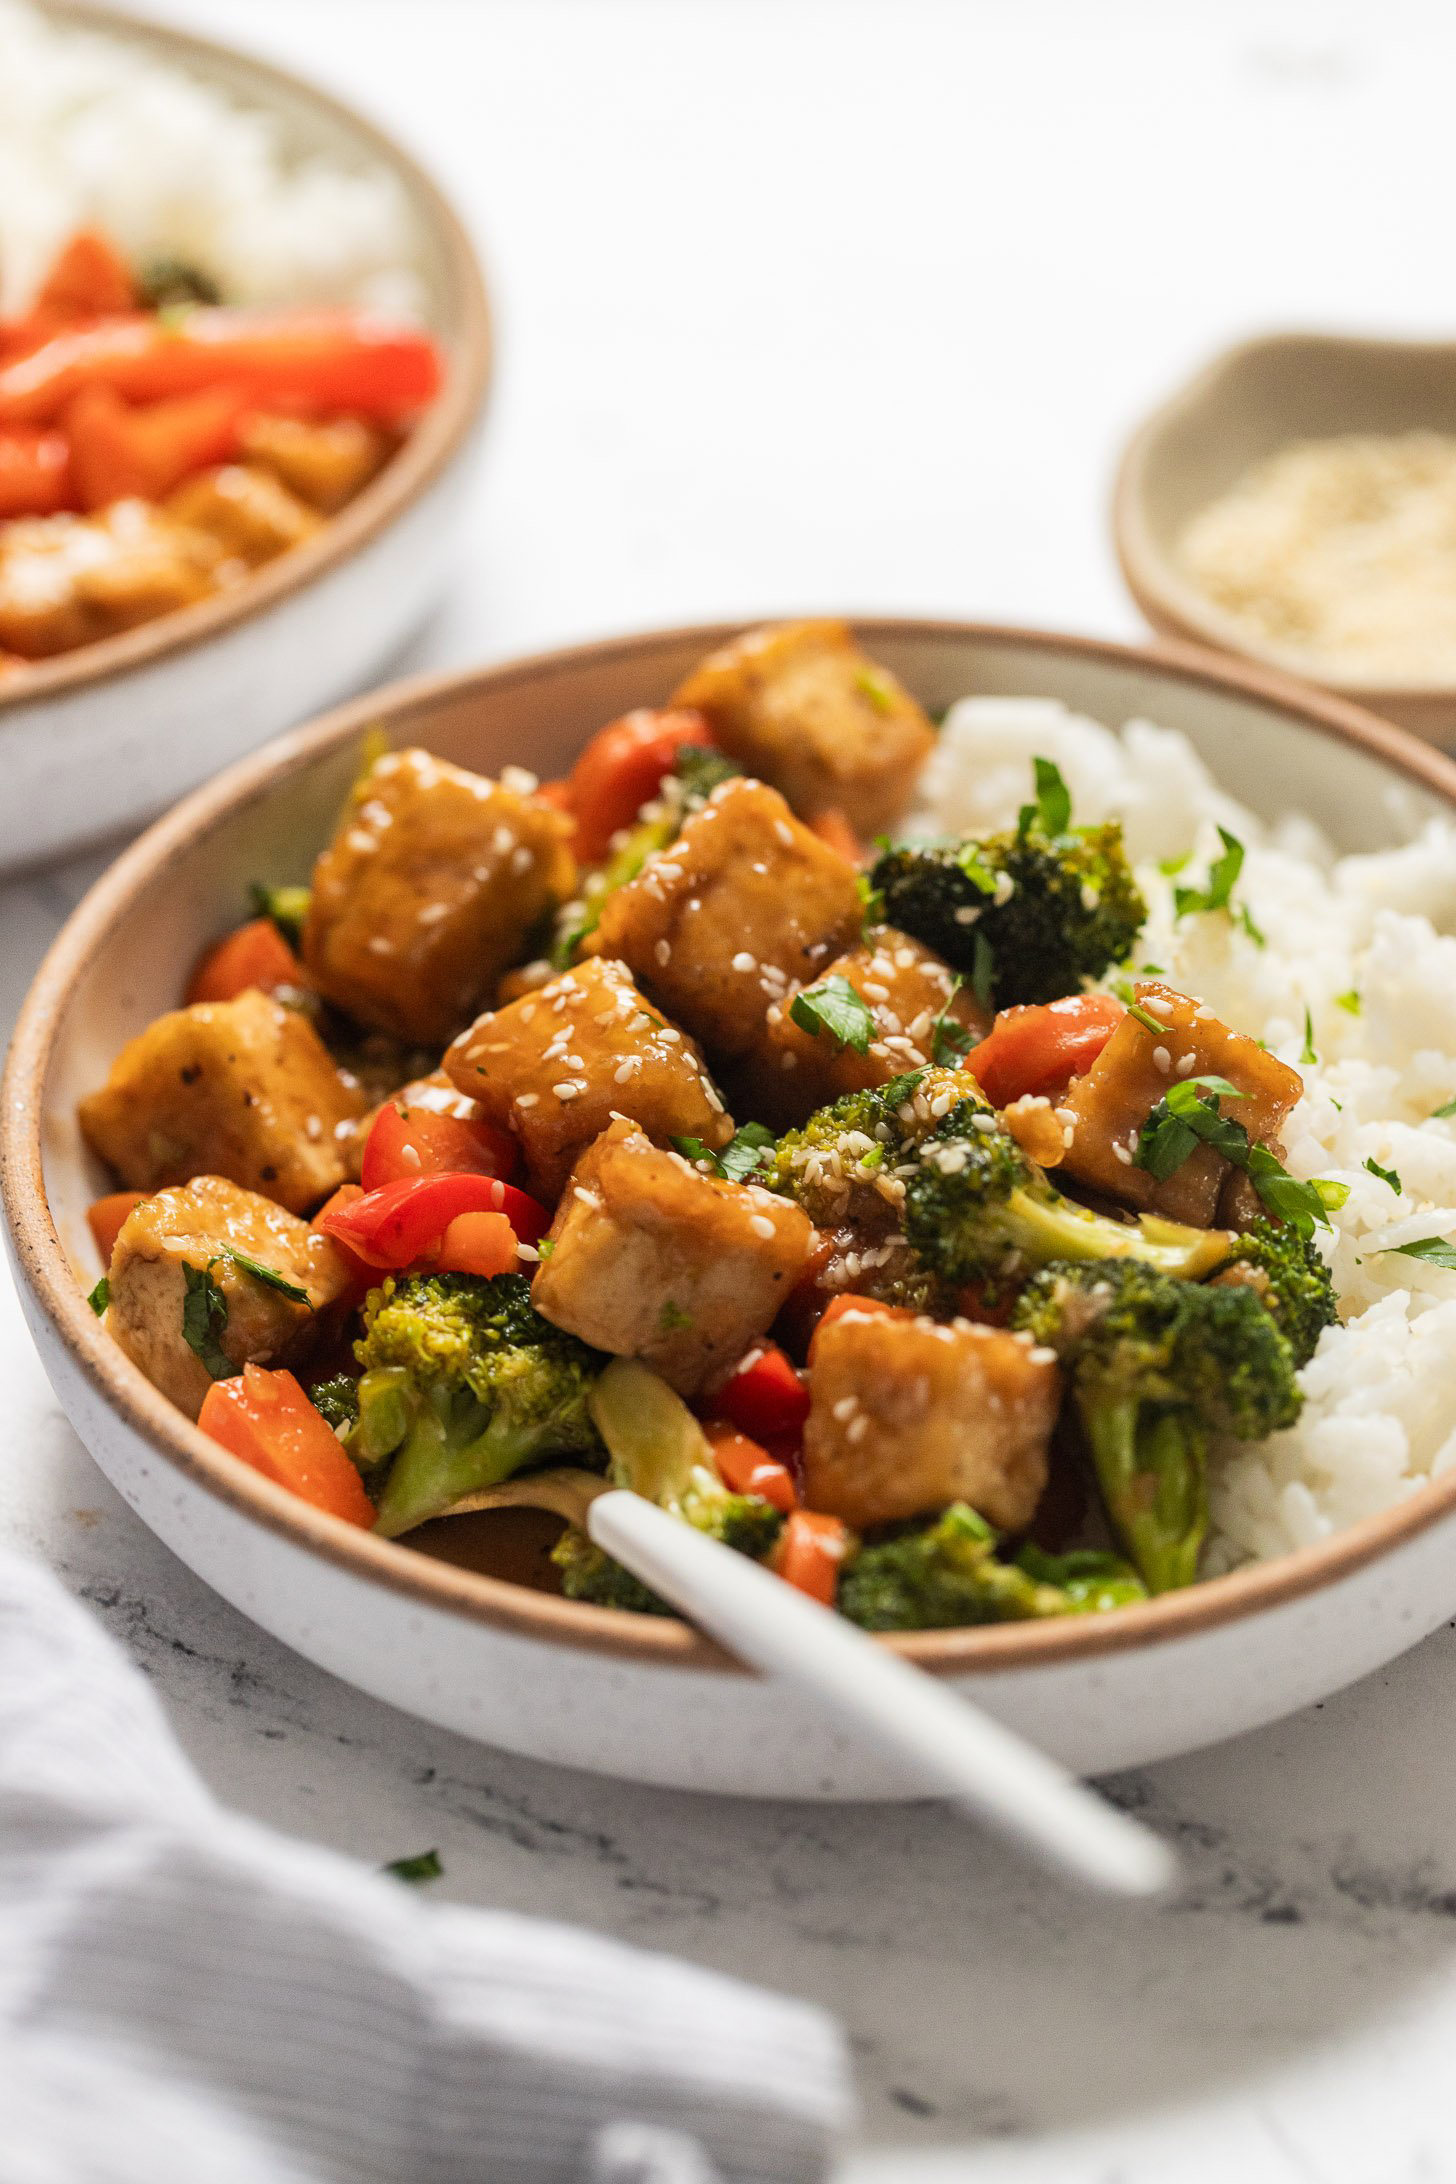 30-Minute Tofu Stir Fry with Broccoli